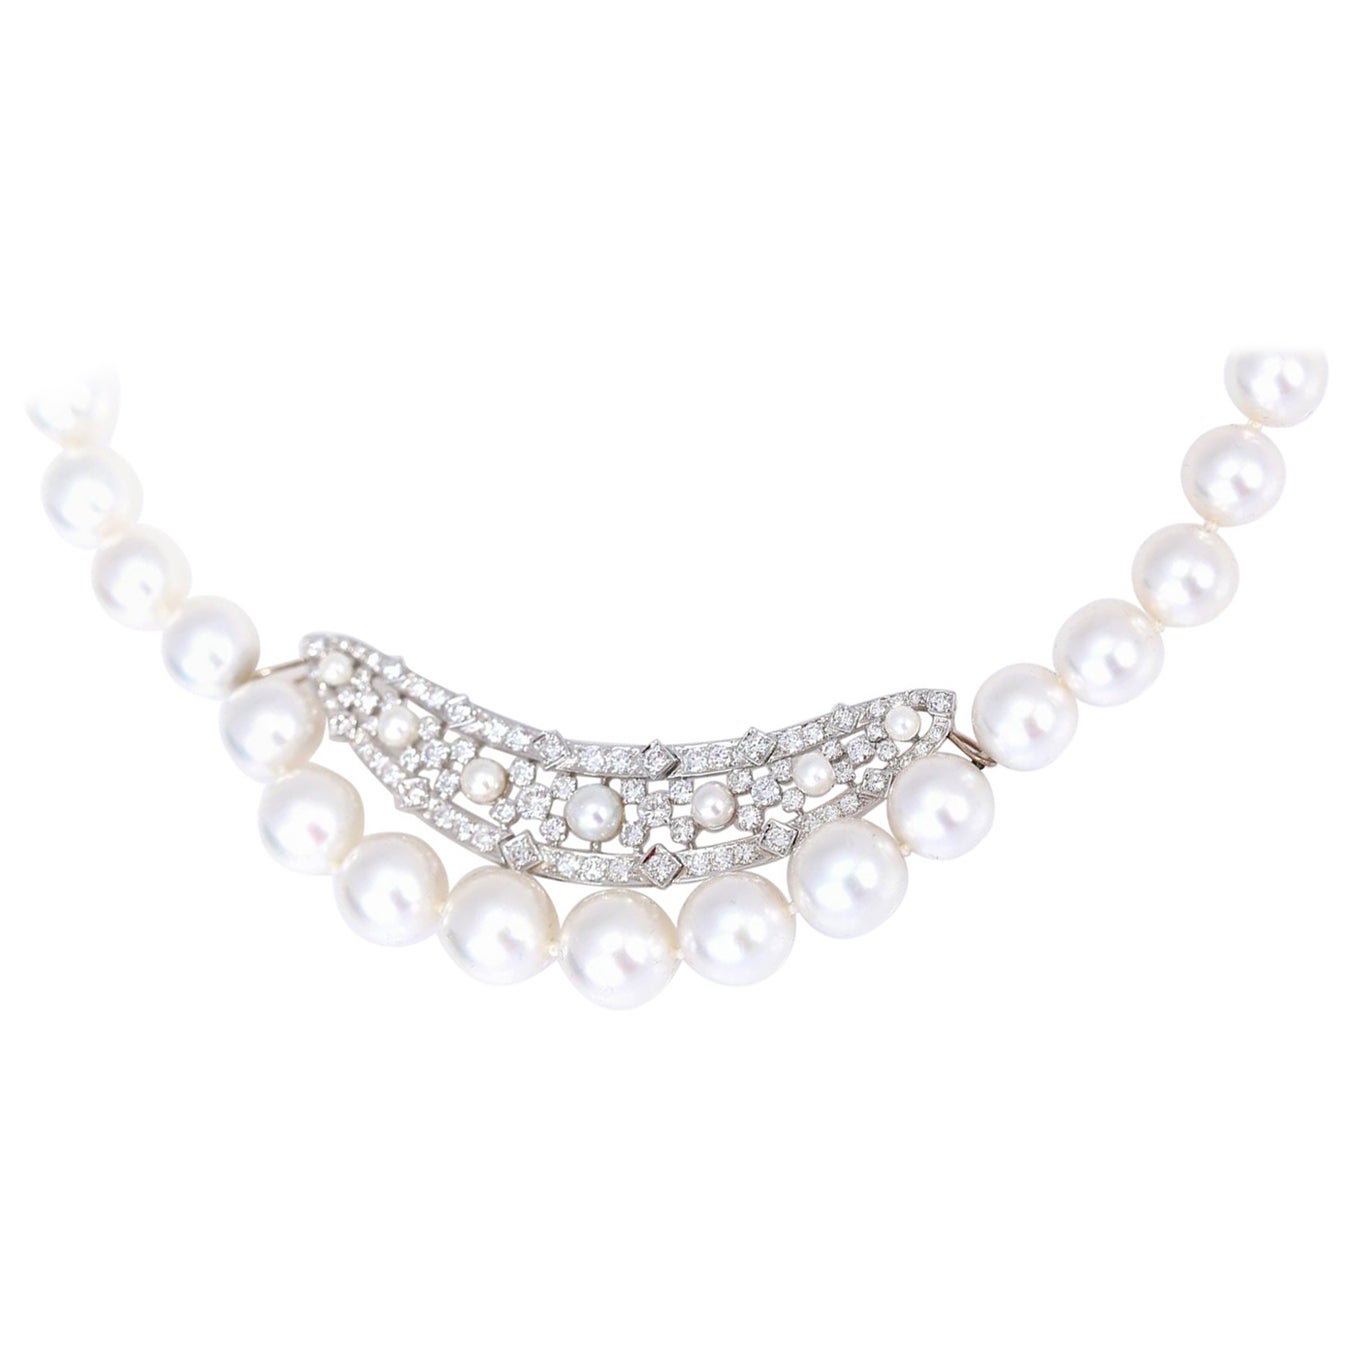 Halskette AAA Qualität AAA Perlen Diamanten 2,5 Karat, 2020